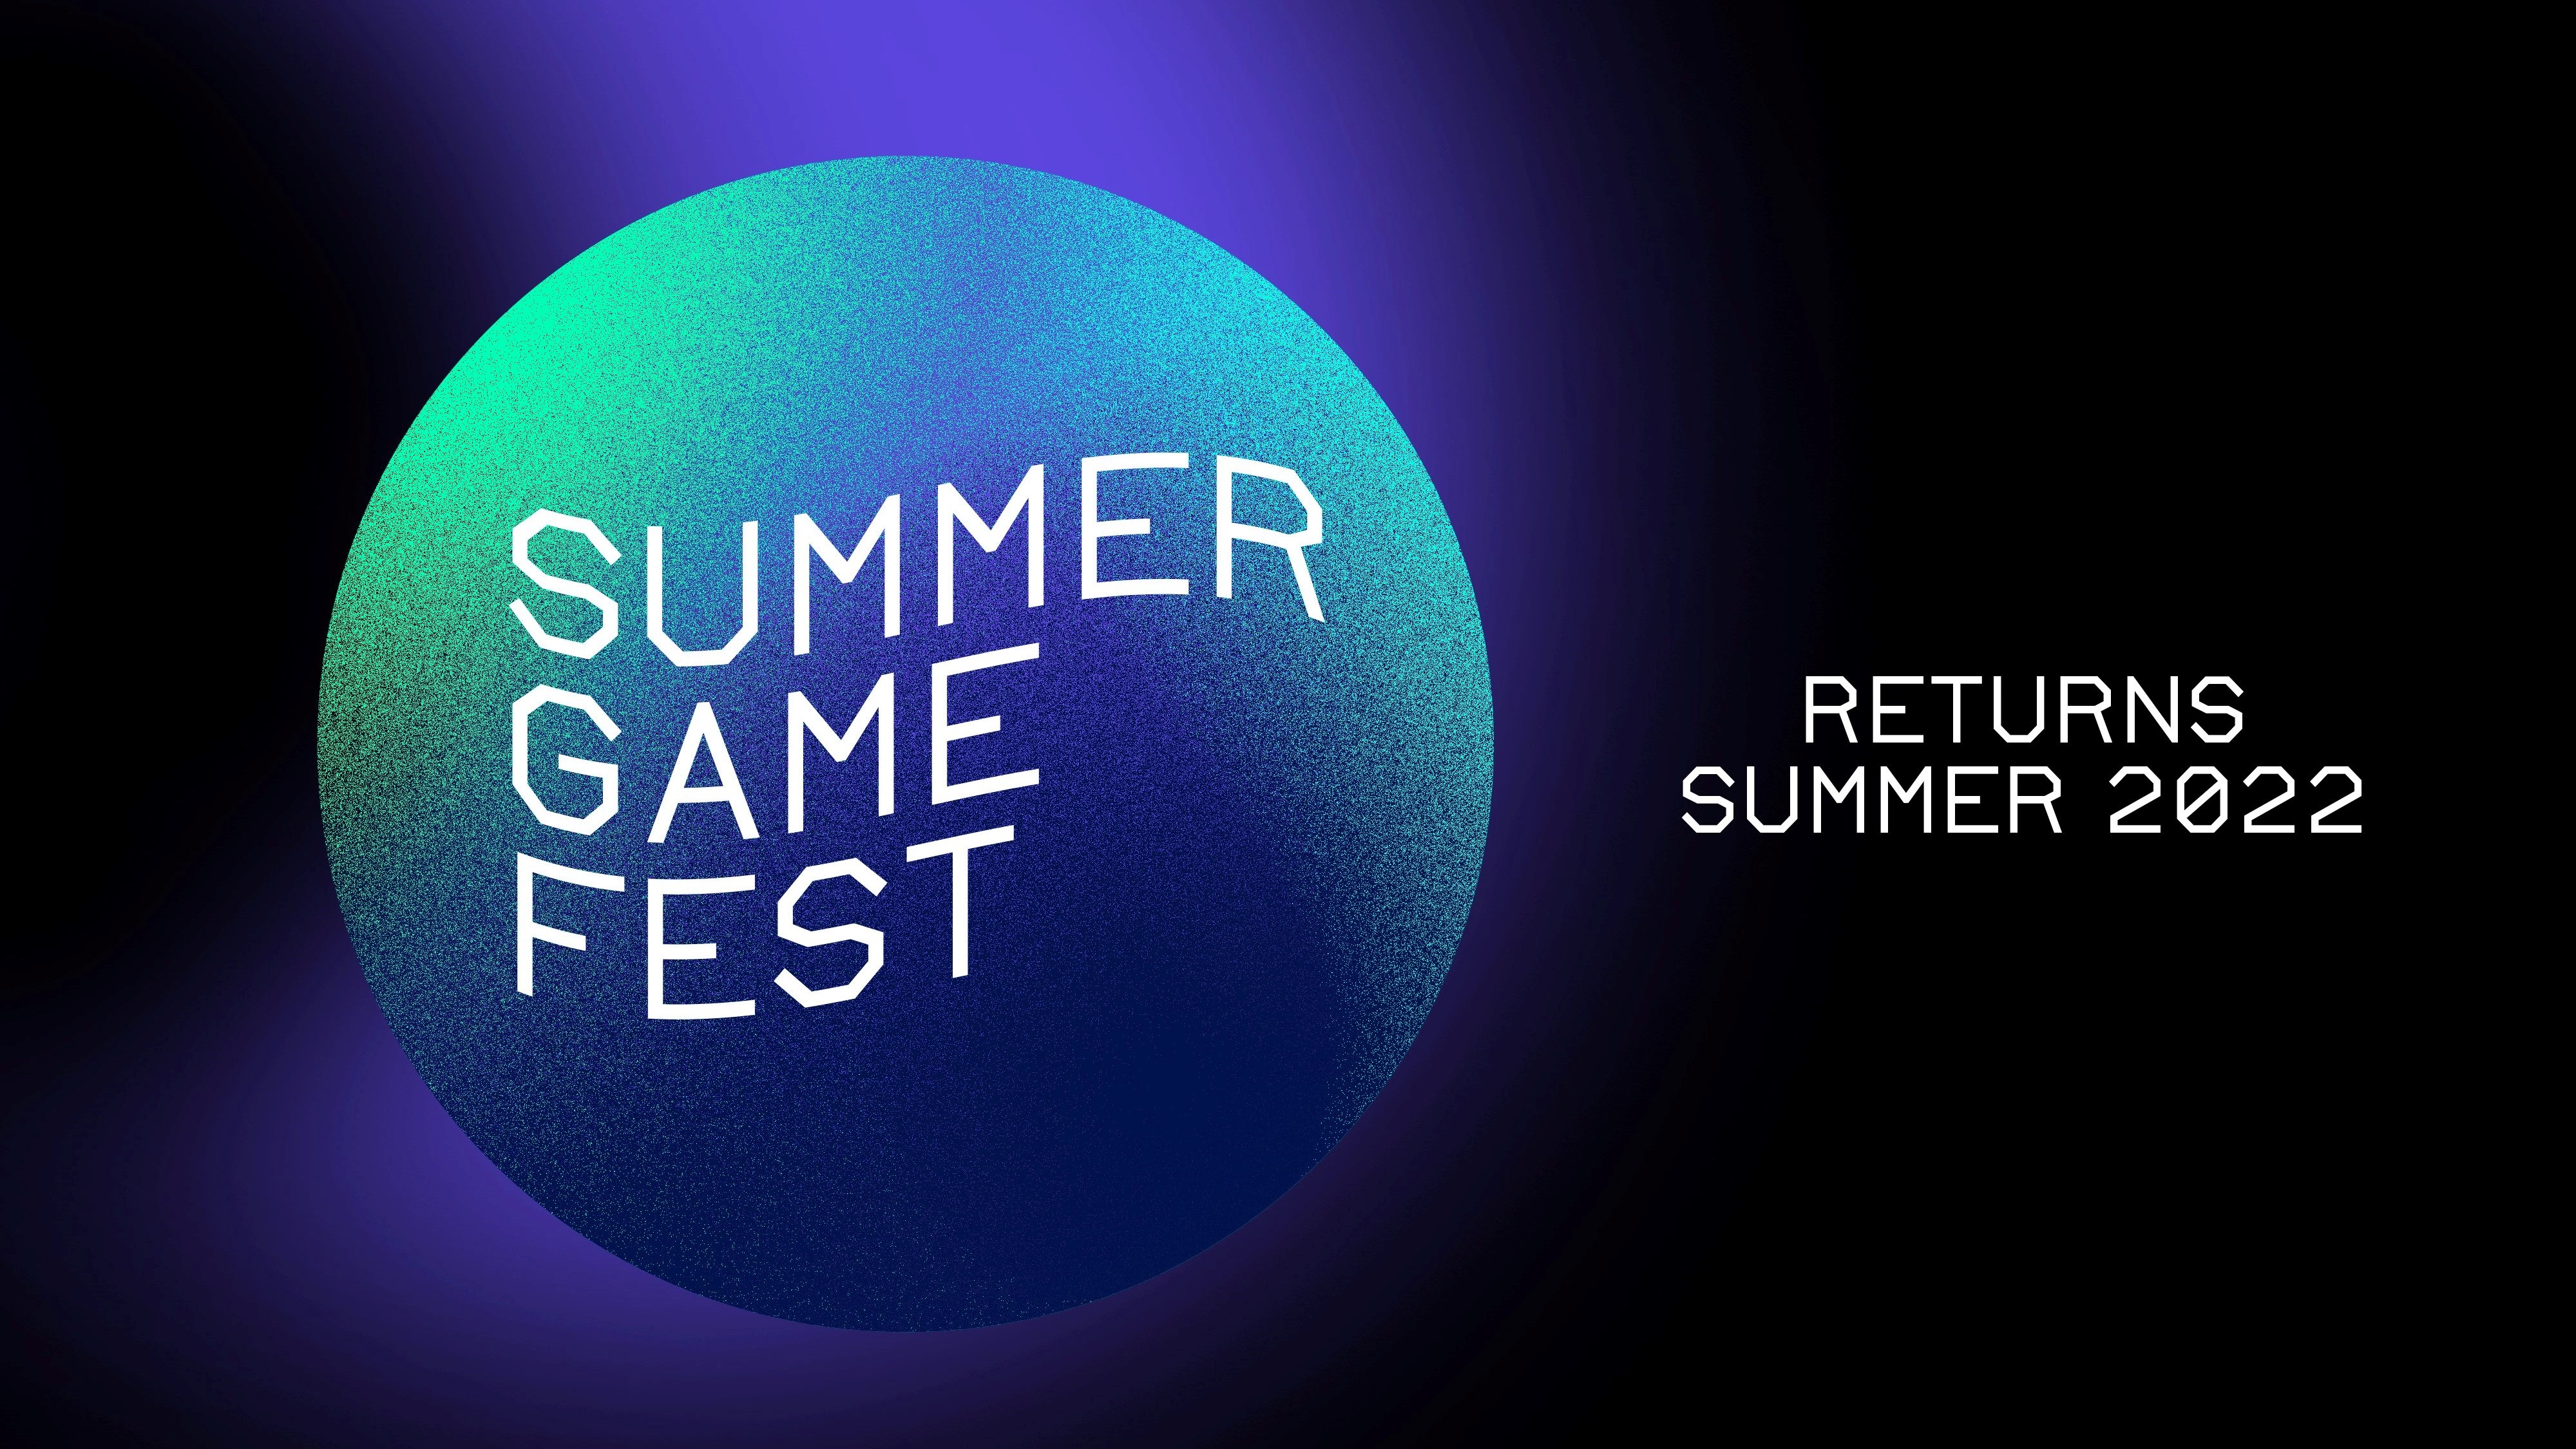 Summer Game Fest kembali pada tahun 2022